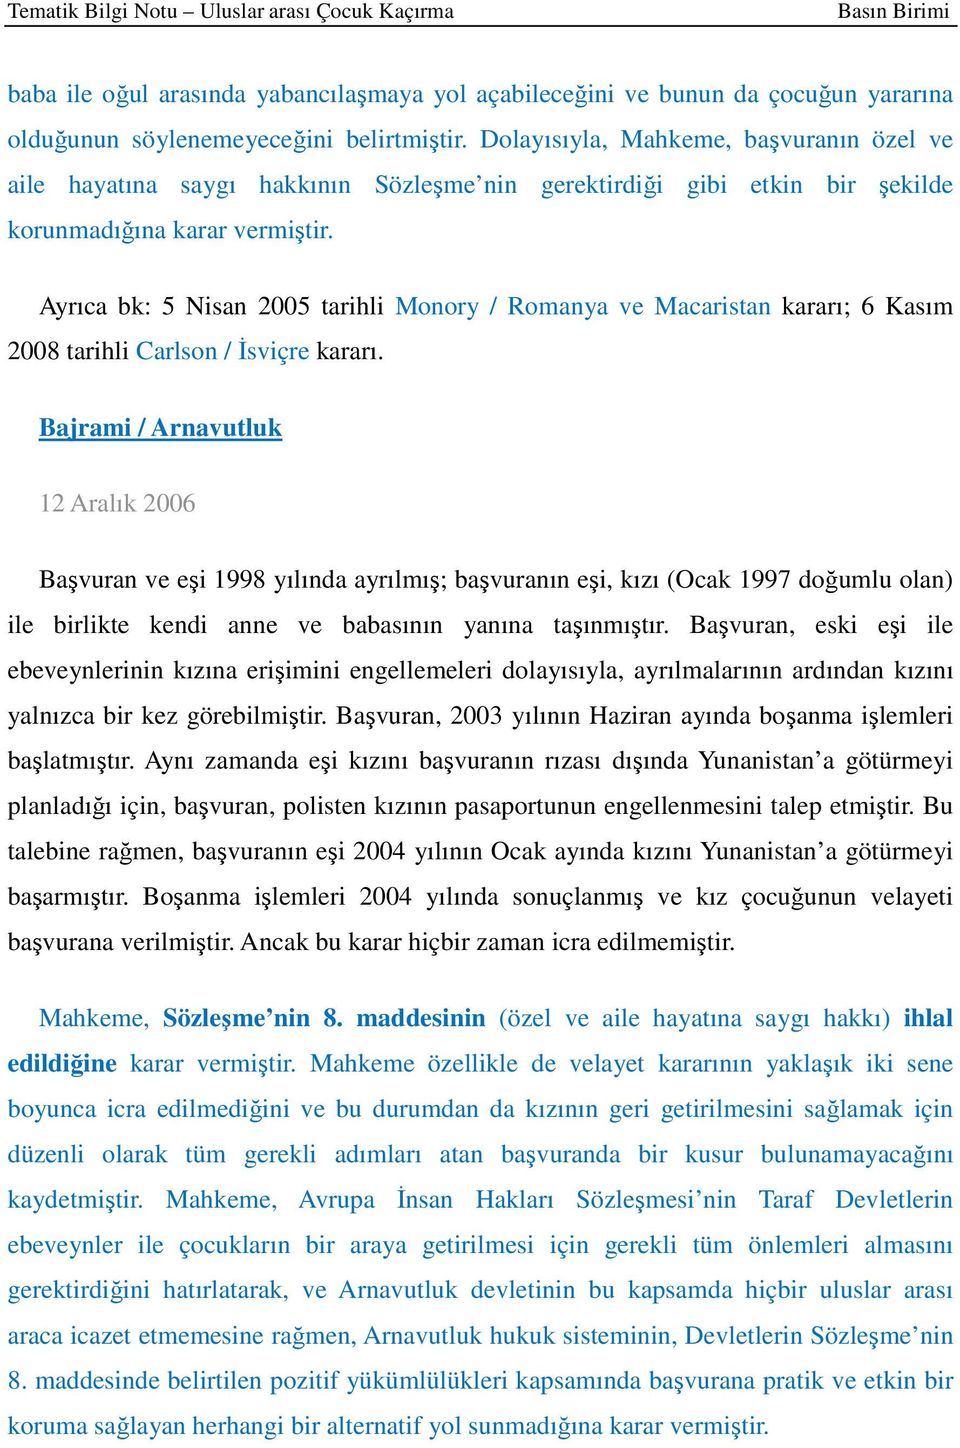 Ayrıca bk: 5 Nisan 2005 tarihli Monory / Romanya ve Macaristan kararı; 6 Kasım 2008 tarihli Carlson / İsviçre kararı.